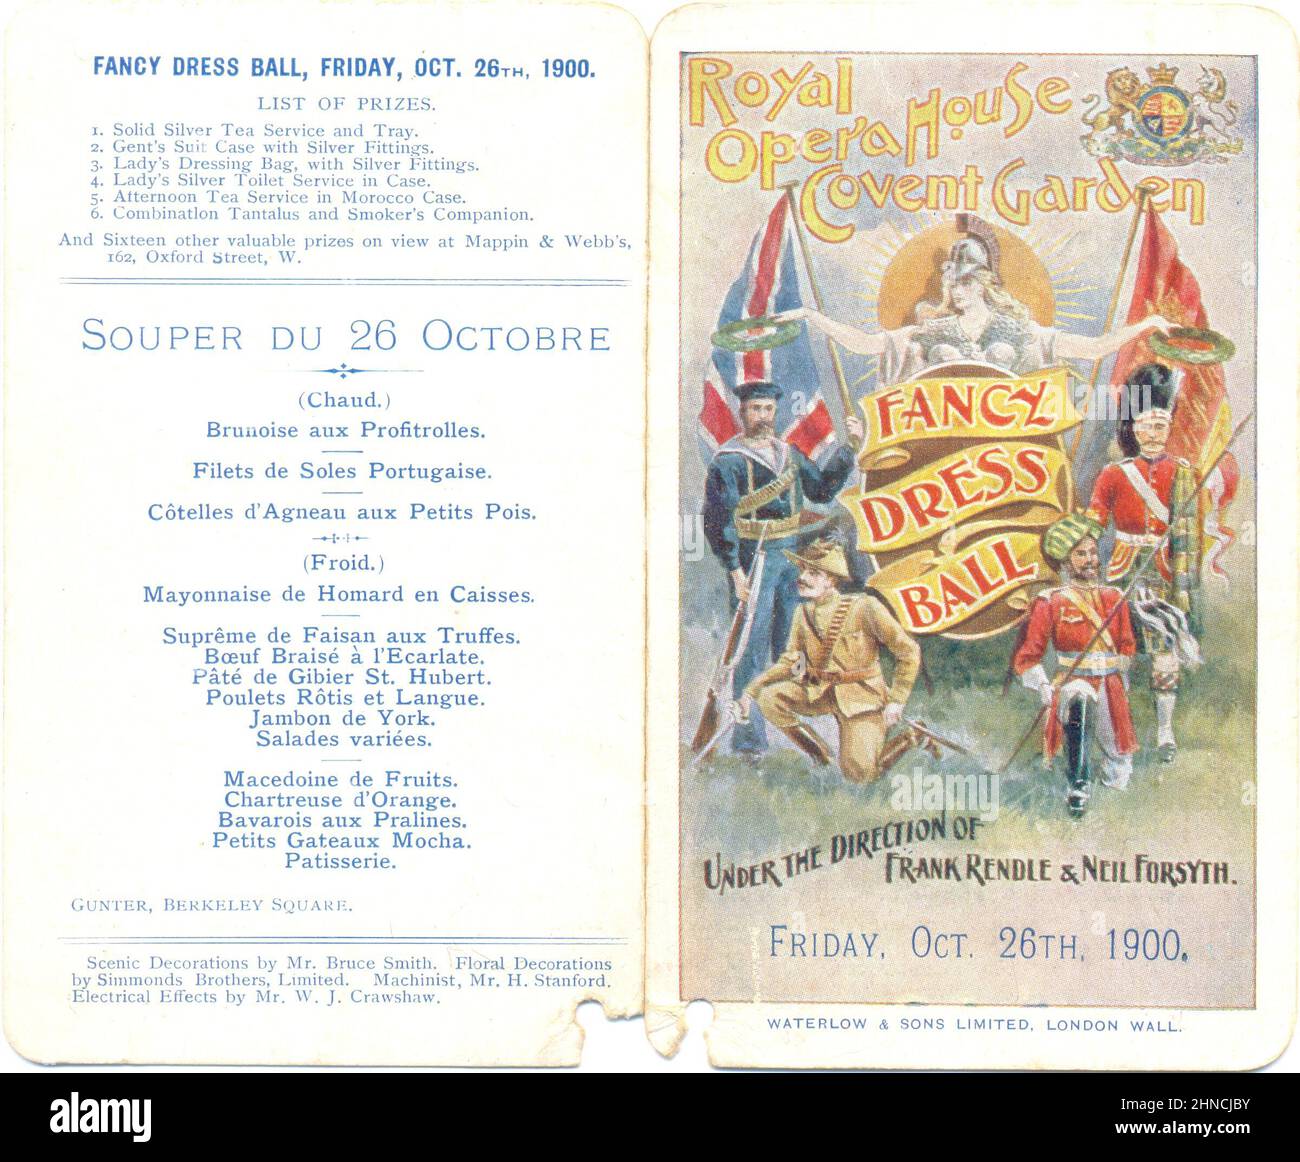 Carta da ballo anteriore e posteriore per Fancy Dress Ball che si terrà presso la Royal Opera House di Covent Garden il 26th ottobre 1900 Foto Stock